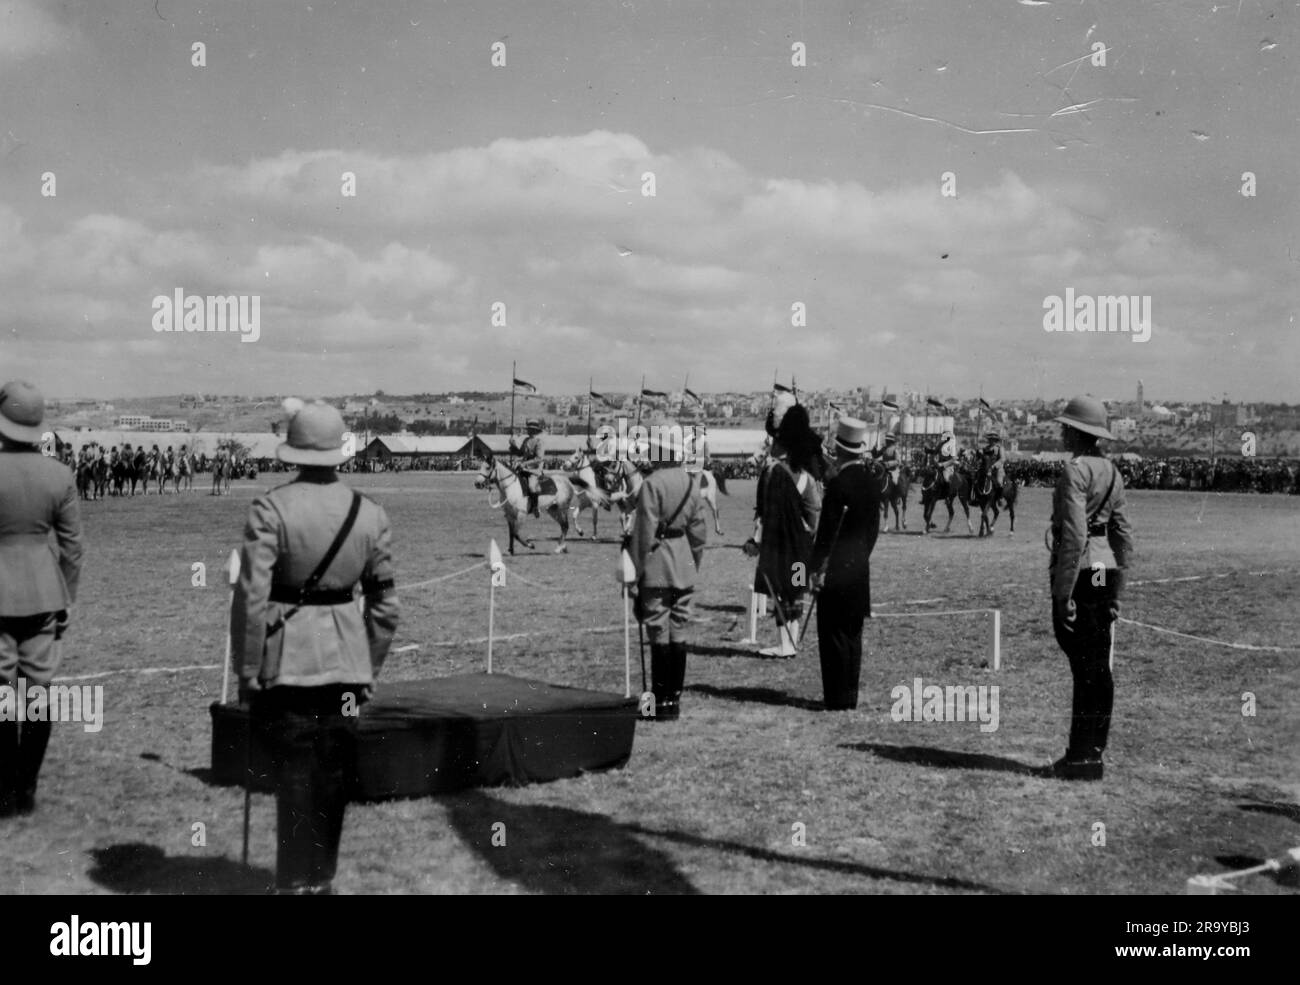 Szene von einem Paradeplatz, einschließlich aufgebrachter Truppen. Dieses Foto stammt aus einem Fotoalbum mit hauptsächlich Schnappschüssen, c1937, während der Besetzung Palästinas durch die britische Armee. Zwischen 1920 und 1948 verwaltete Großbritannien Palästina im Namen des Völkerbundes, ein Zeitraum, der als "britisches Mandat" bezeichnet wird. Stockfoto